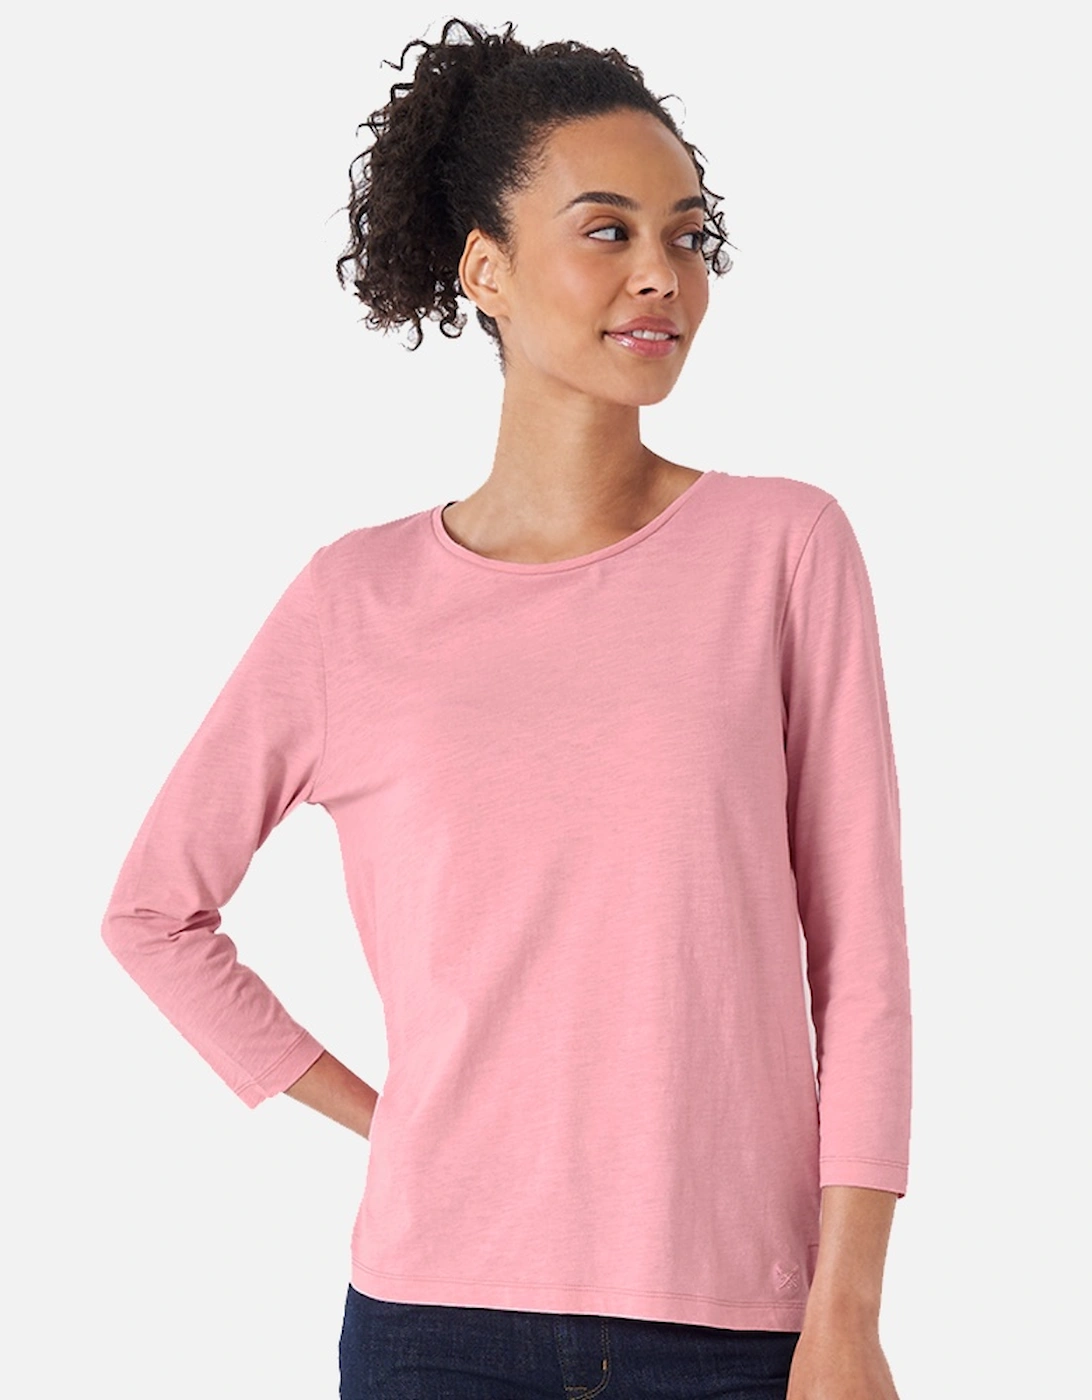 Womens Long Sleeve Perfect Cotton Slub T Shirt, 5 of 4